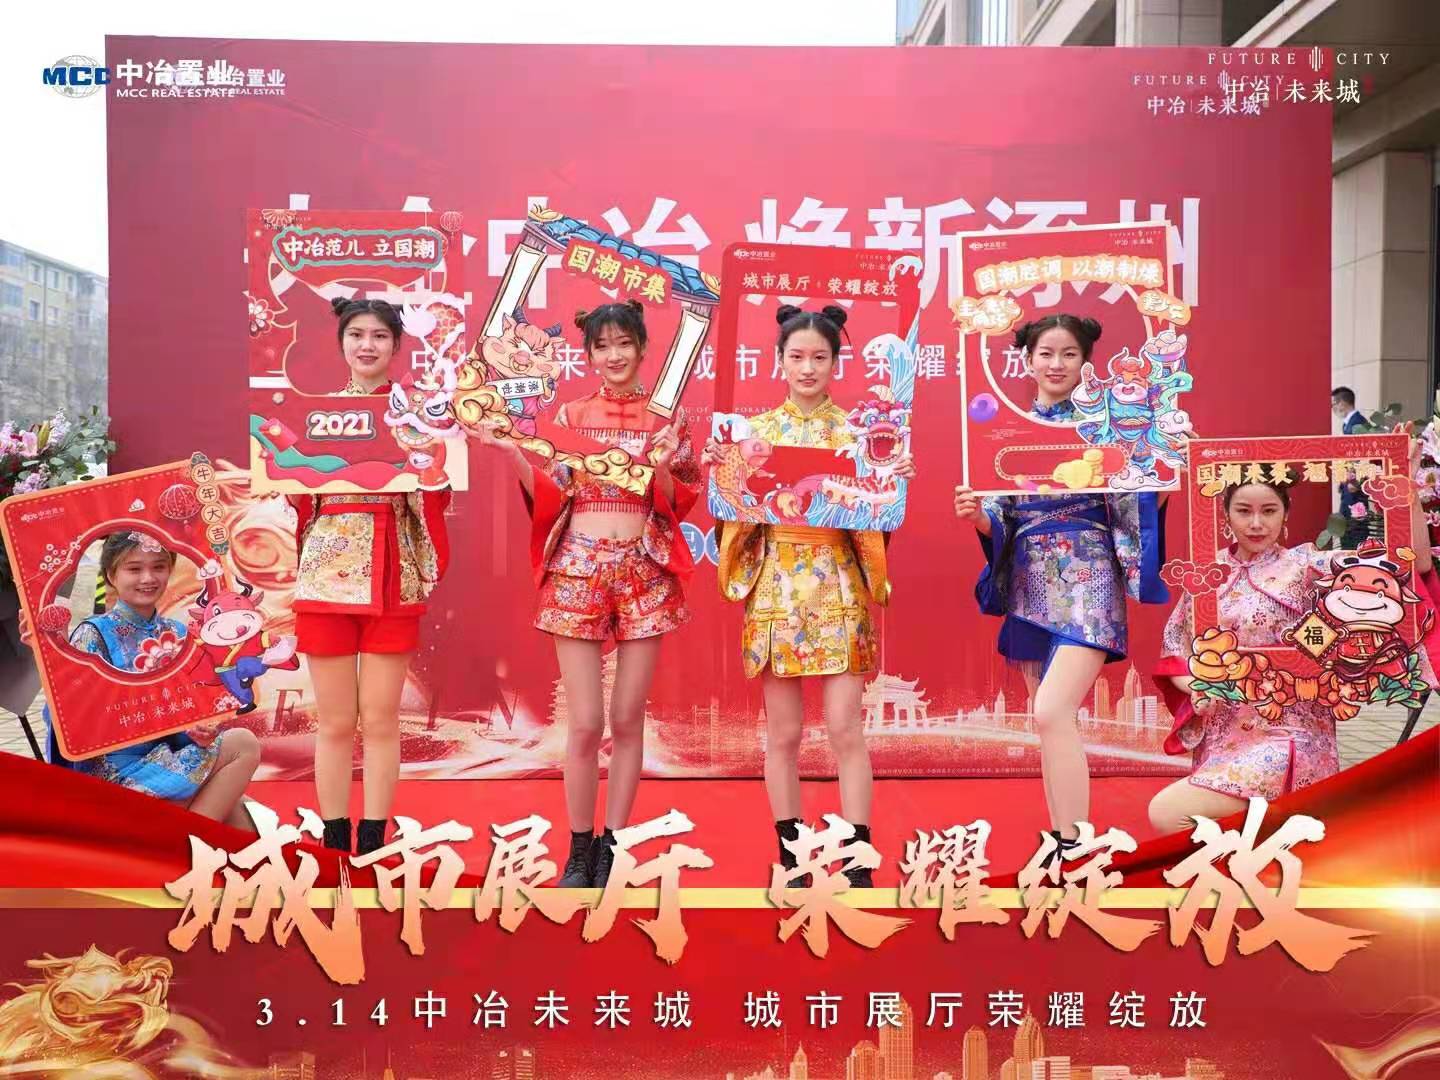 涿州市中冶未来城售楼处开放演出活动图片